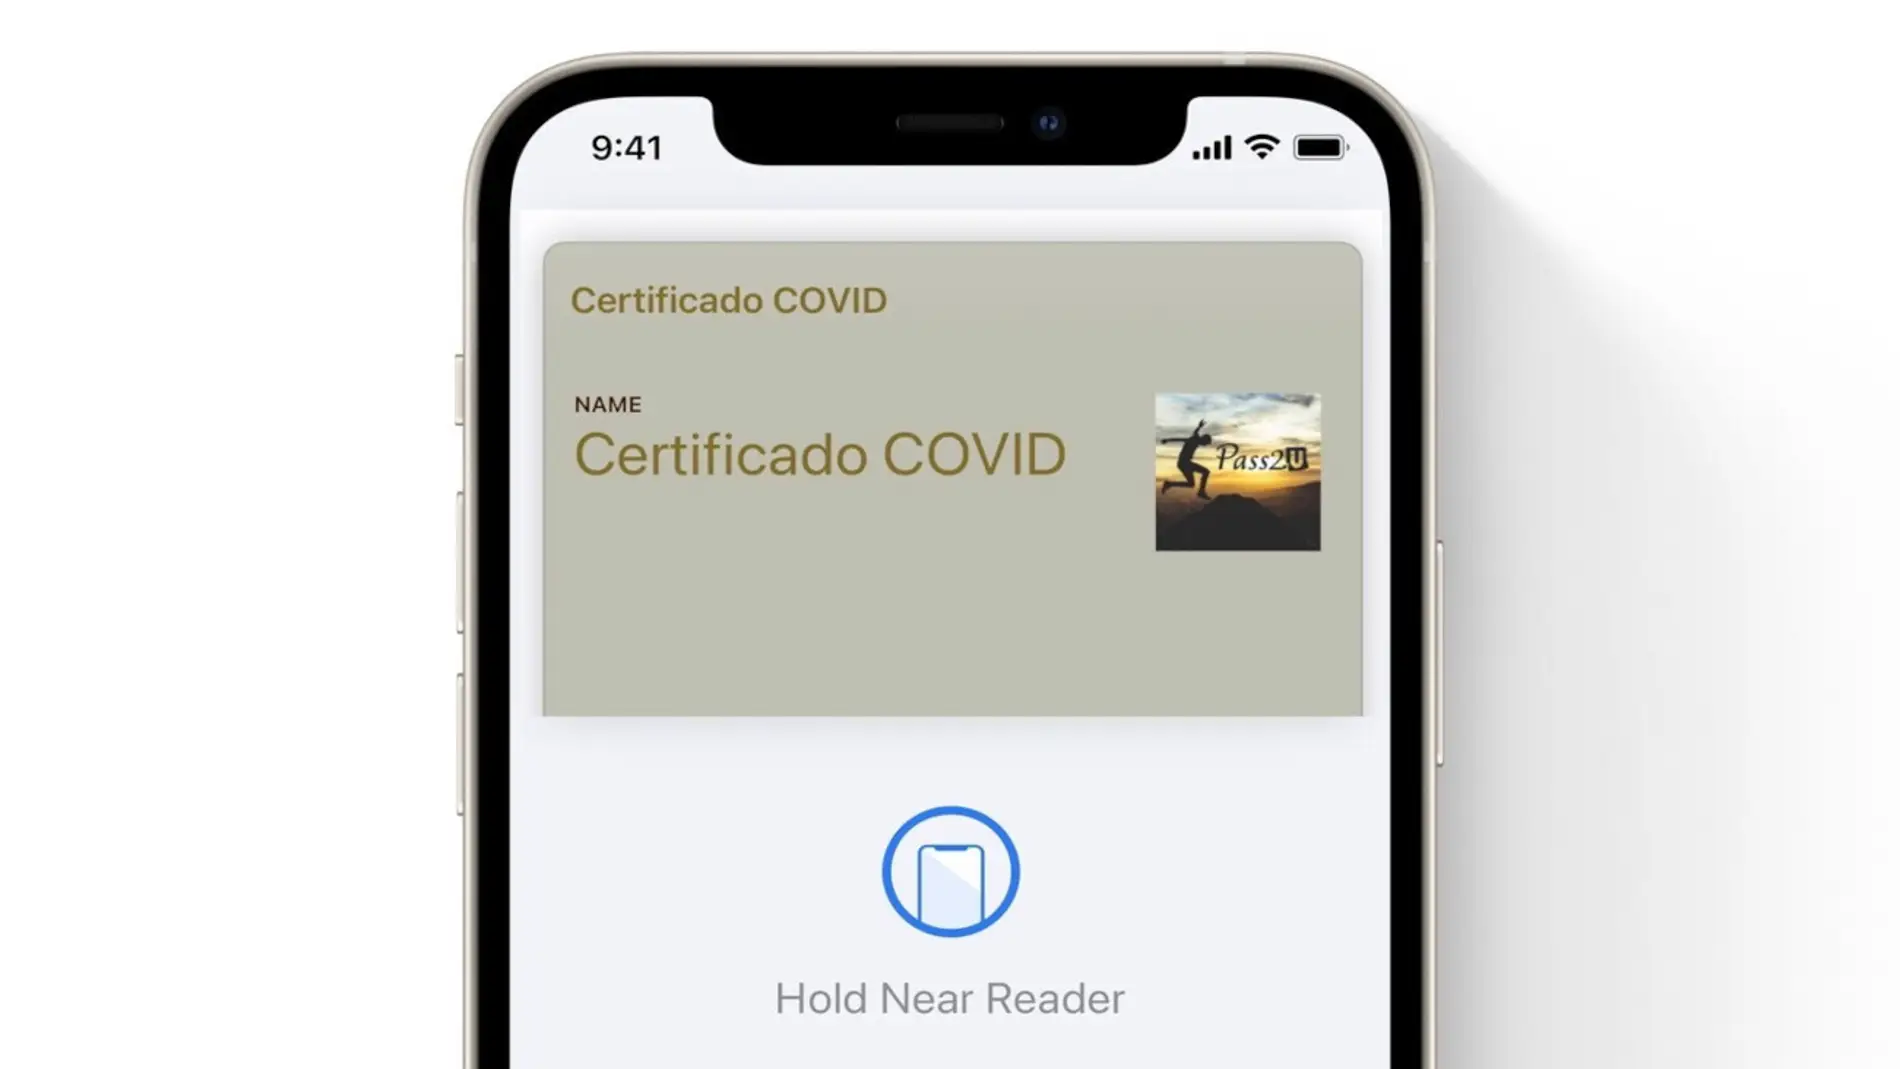 Oficialmente ya puedes tener tu certificado COVID en la Apple Wallet